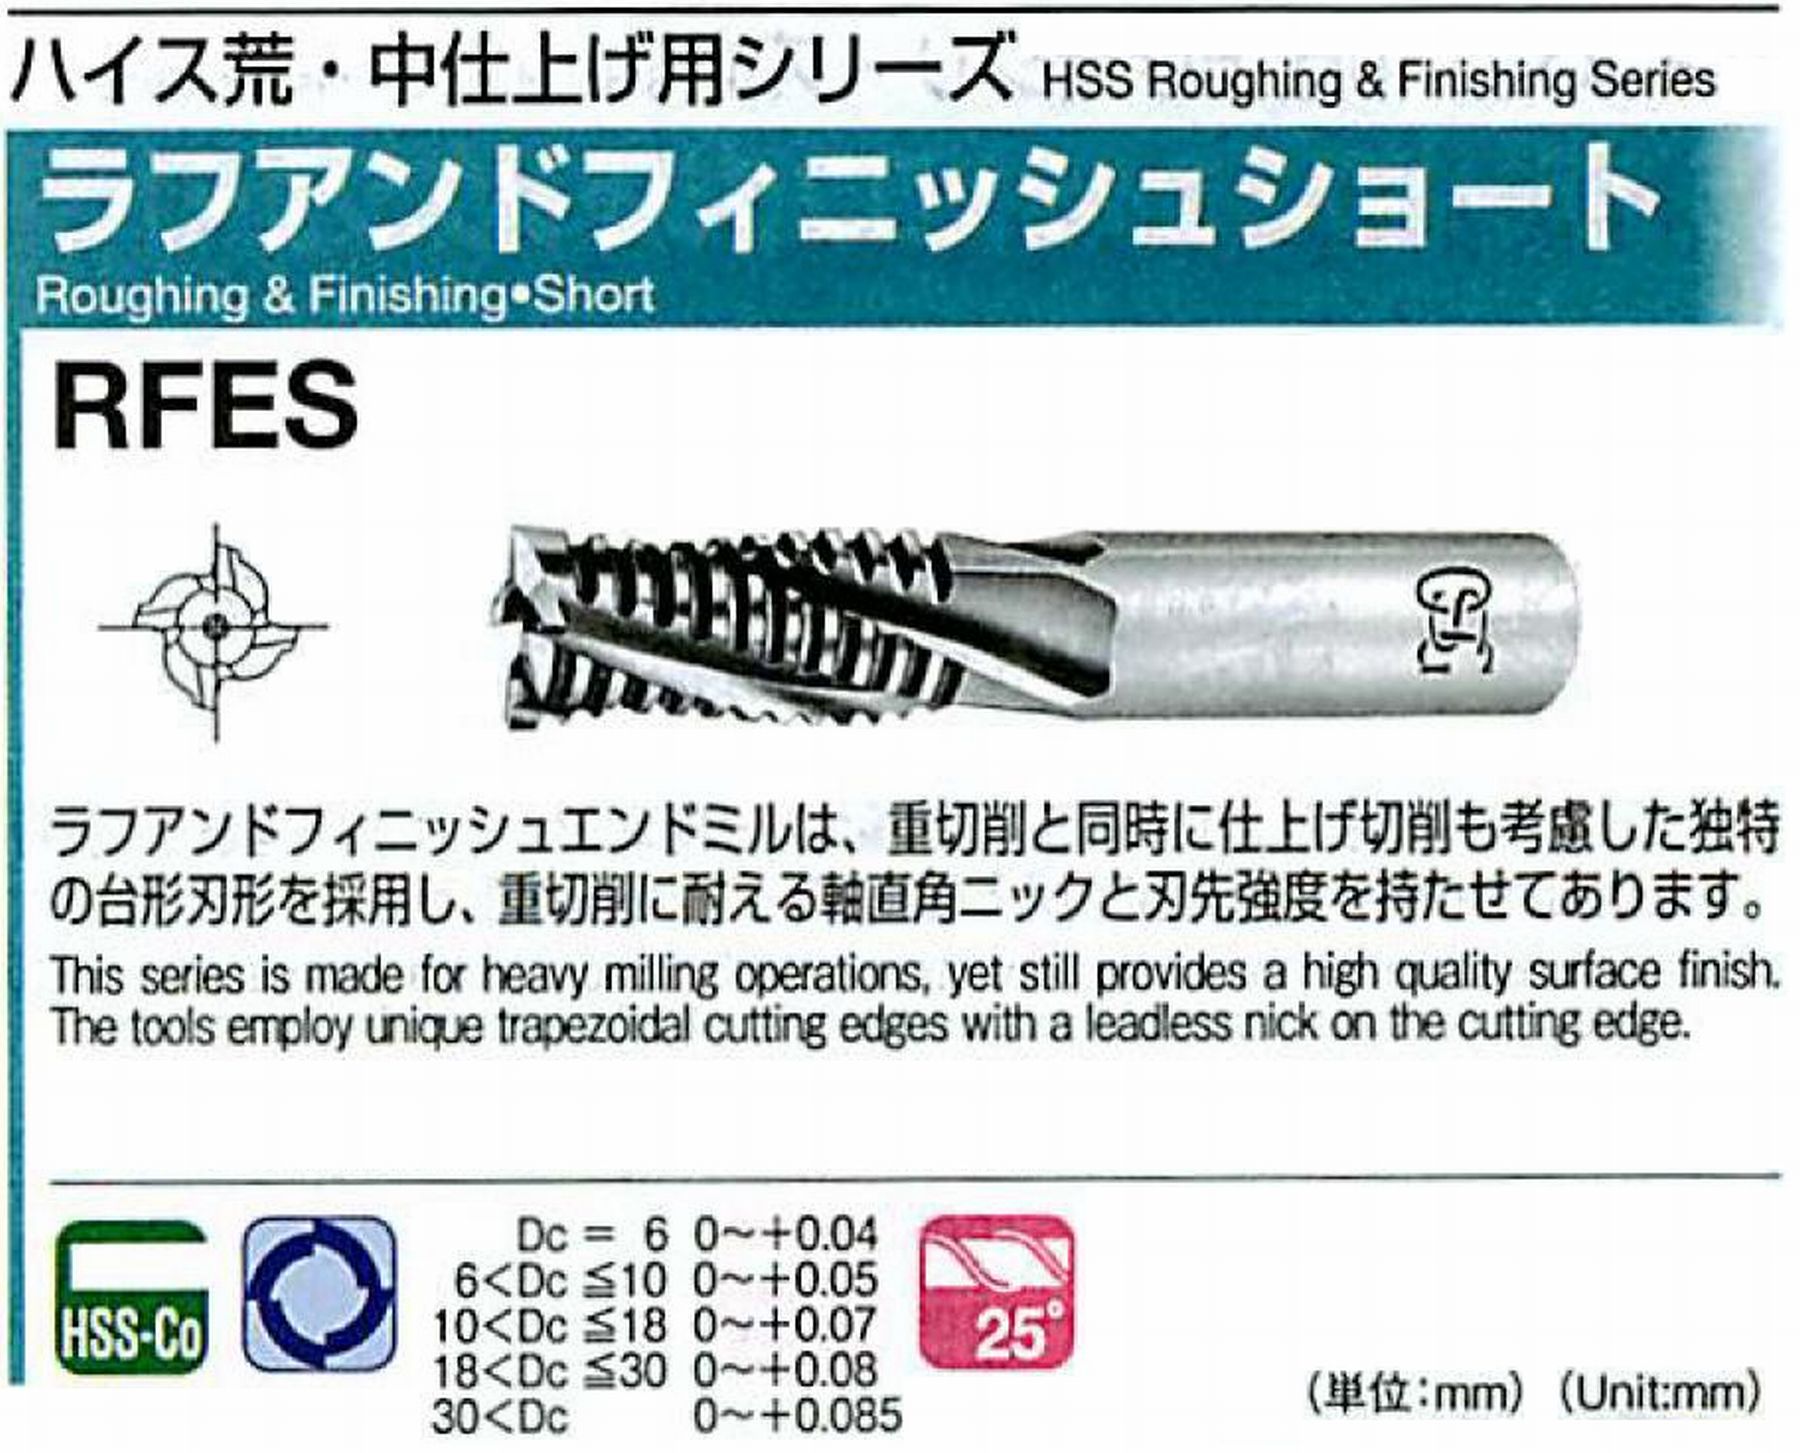 オーエスジー/OSG ラフアンドフィニッシュ ショート RFES 外径6 全長56 刃長15 シャンク径6mm 刃数4